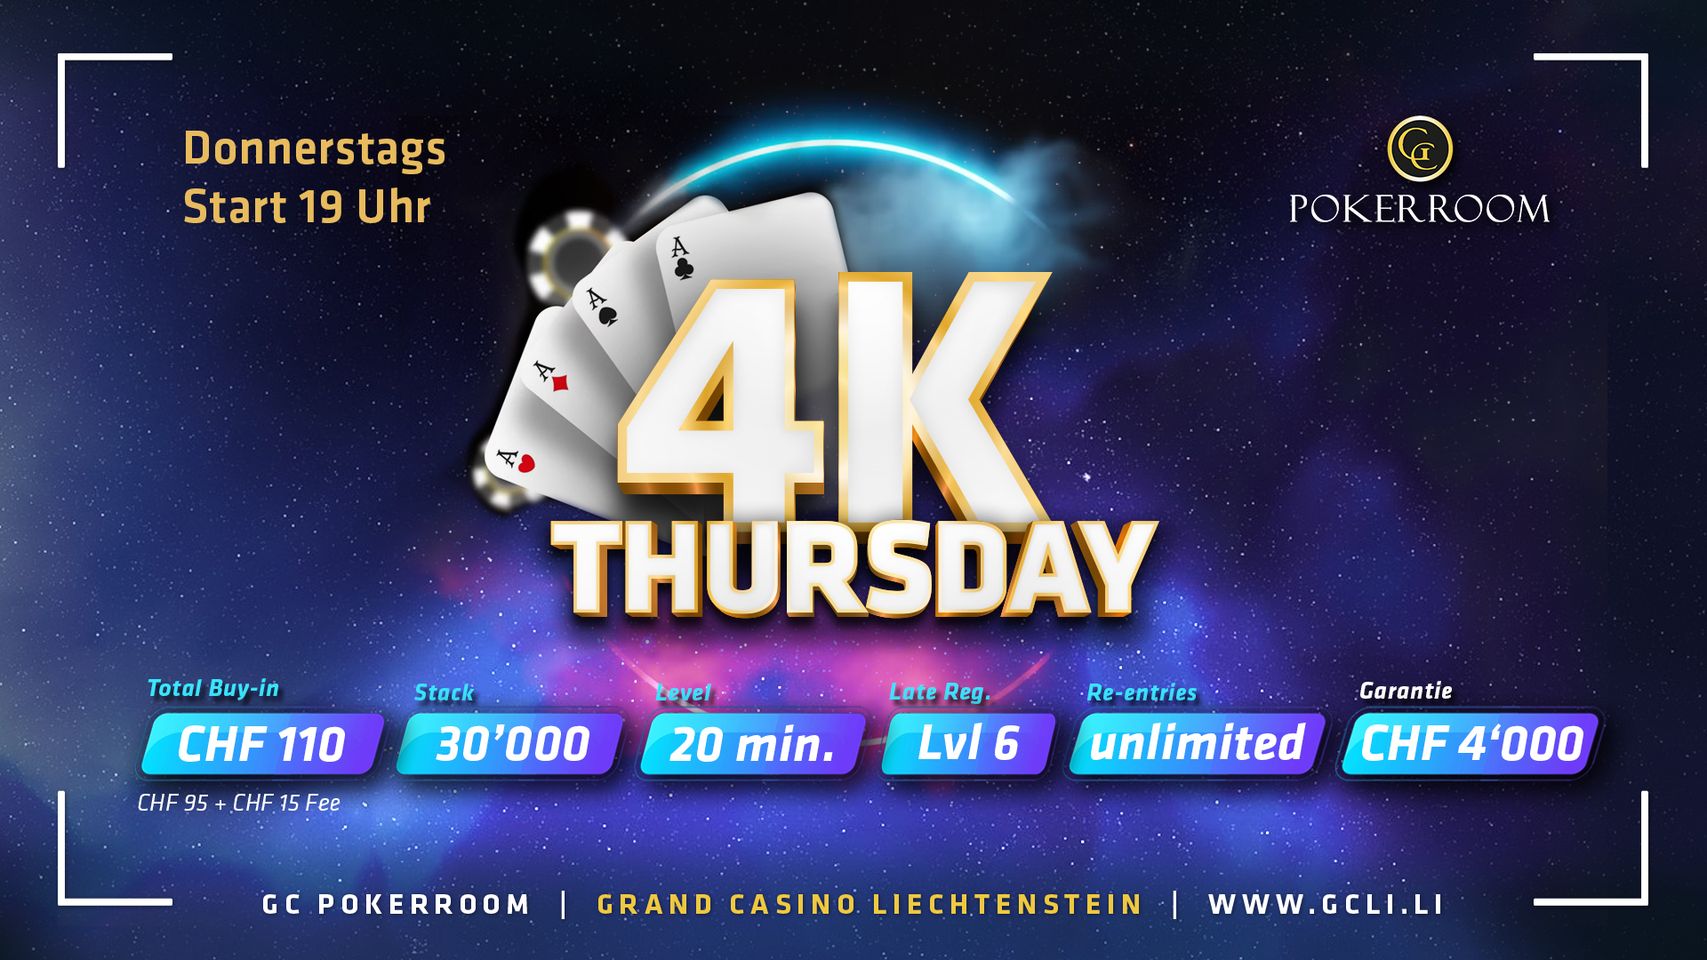 Grand Casino Liechtenstein: Deal directly at 4k Thursday